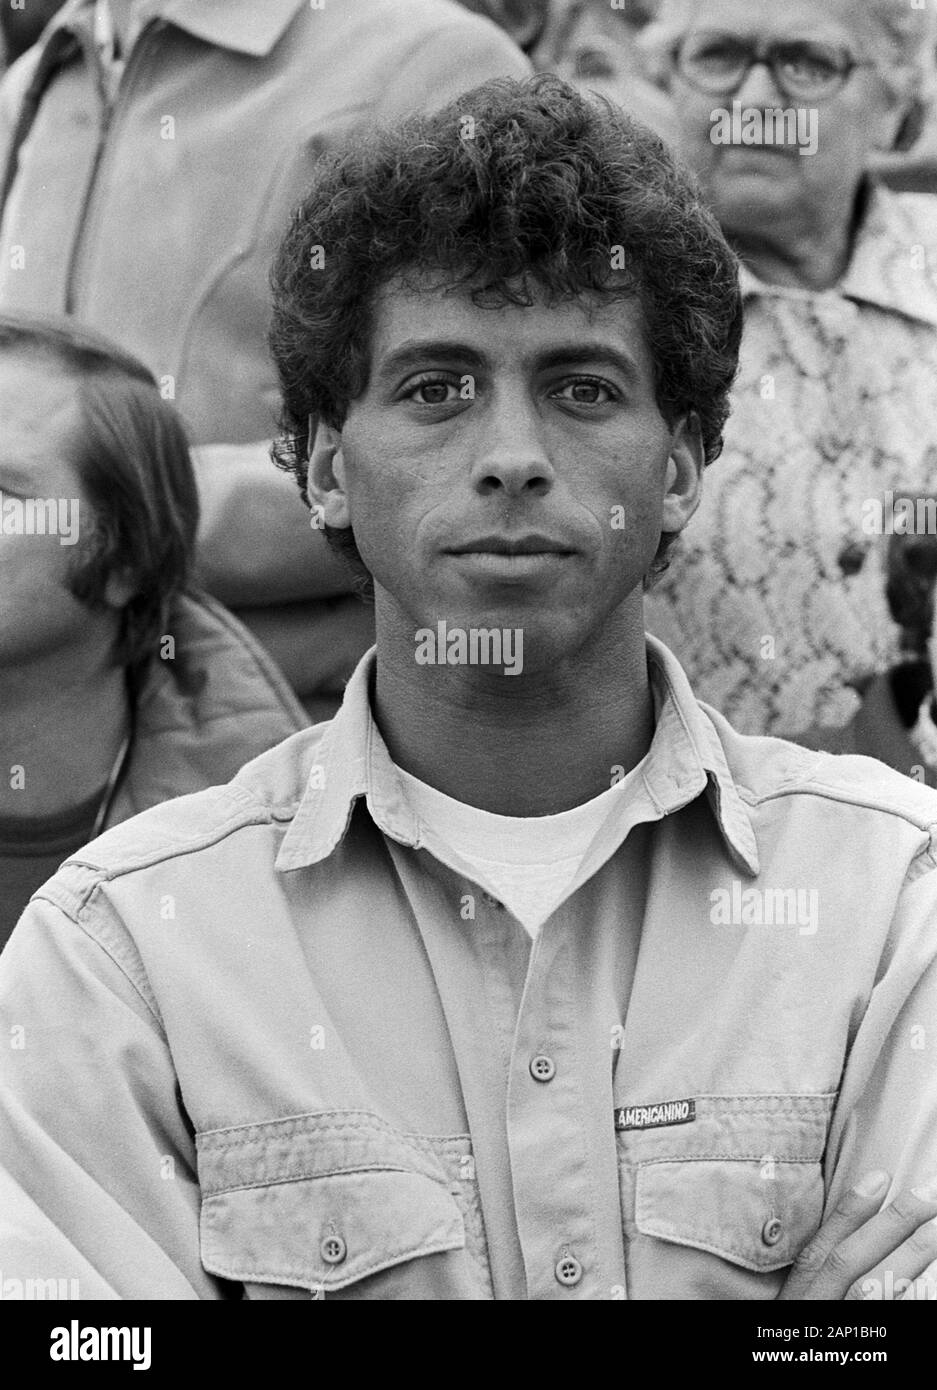 Jimmy Hartwig, Deutscher Fußballspieler en Hamburgo, Alemania um 1981. Jugador de fútbol alemán Jimmy Hartwig en Hamburgo, Alemania, alrededor de 1981. Foto de stock